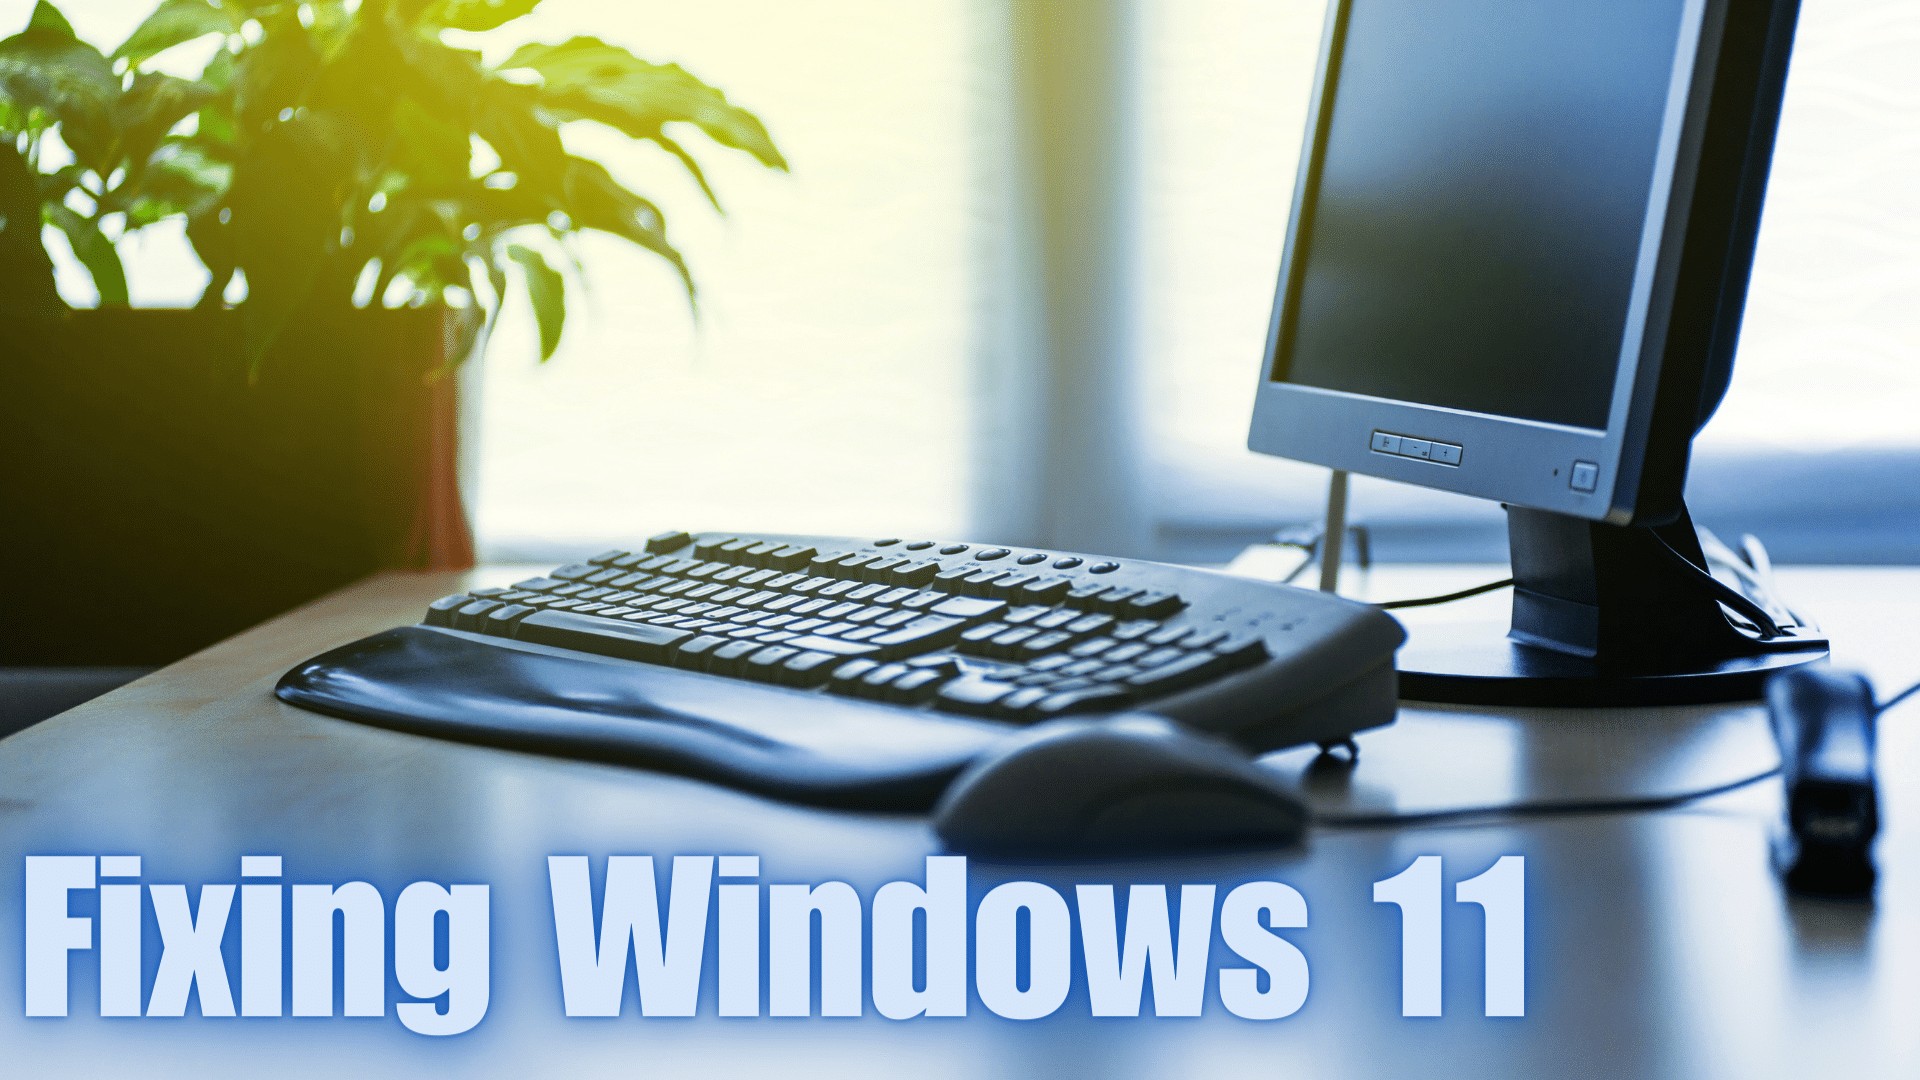 Fixing Windows 11